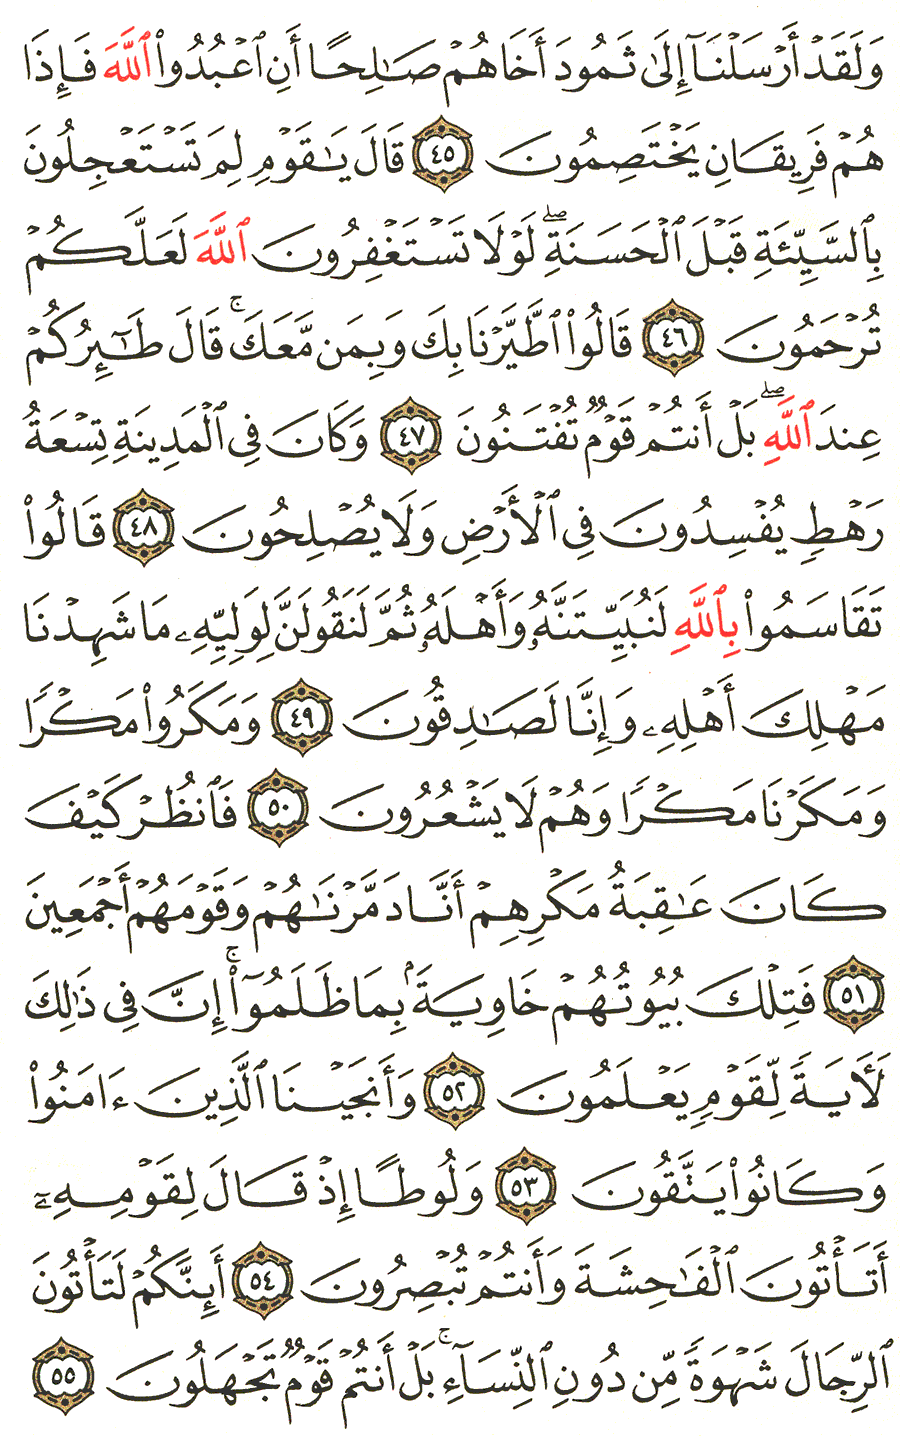 الصفحة رقم 381  من القرآن الكريم مكتوبة من المصحف